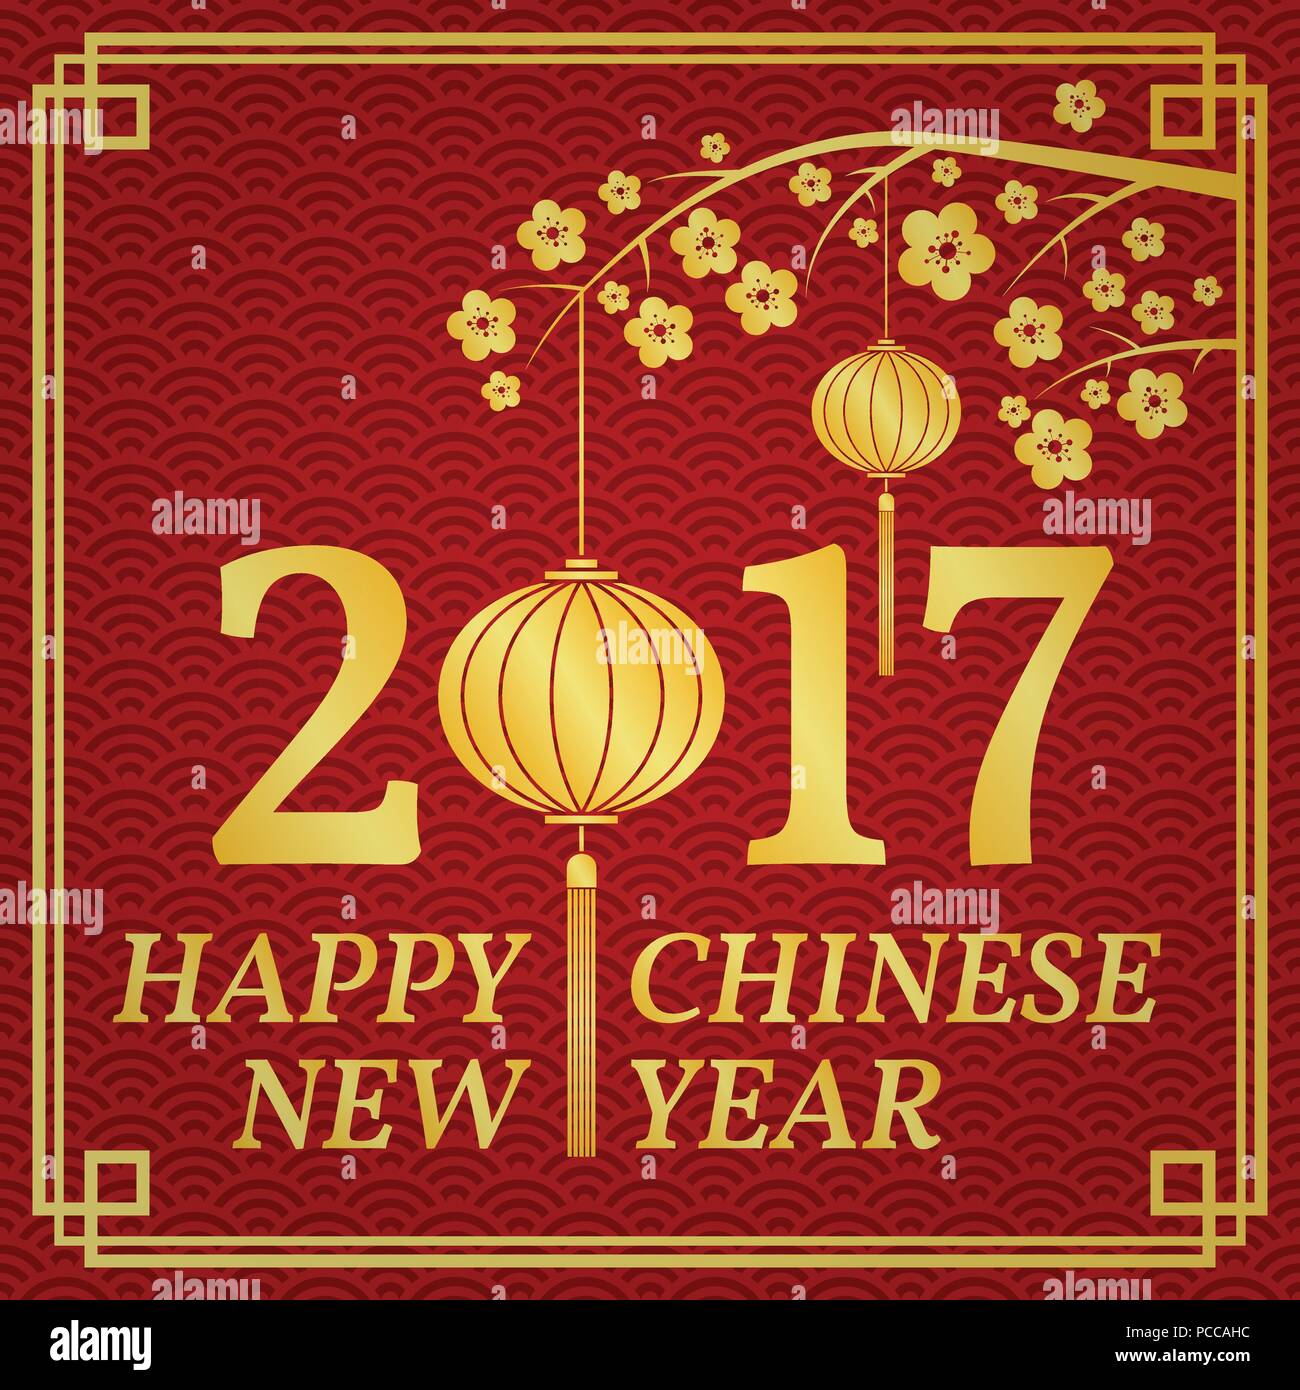 Joyeux Nouvel An chinois 2017 typographie avec des lanternes chinoises. Vector illustration. Illustration de Vecteur